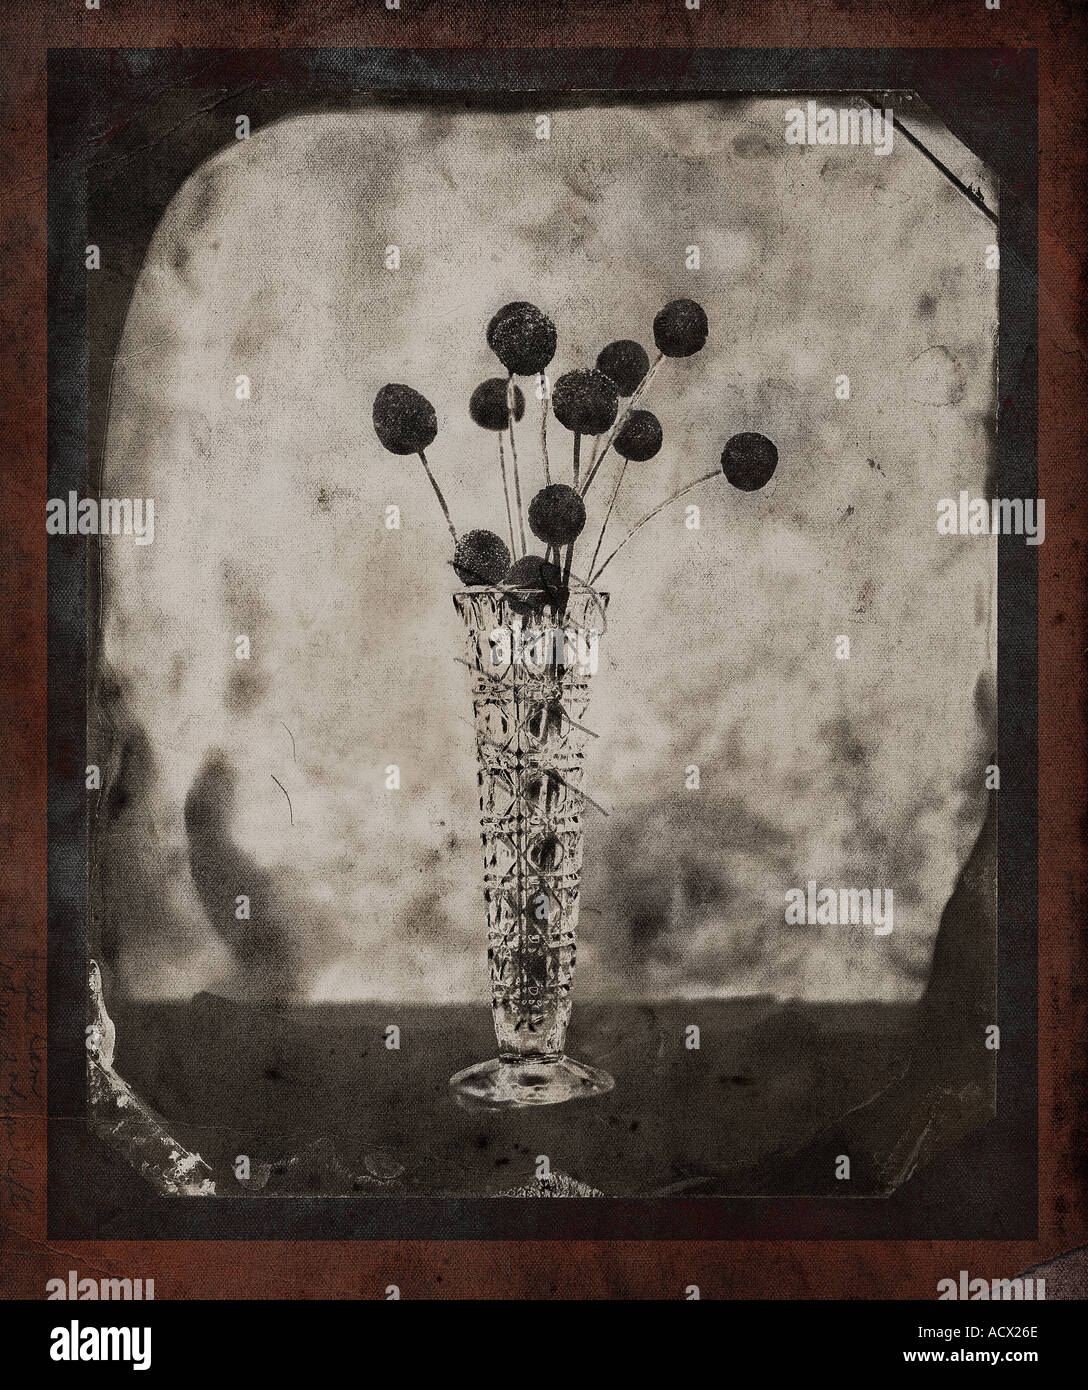 Fotografia artistica di fiori in vaso Foto Stock